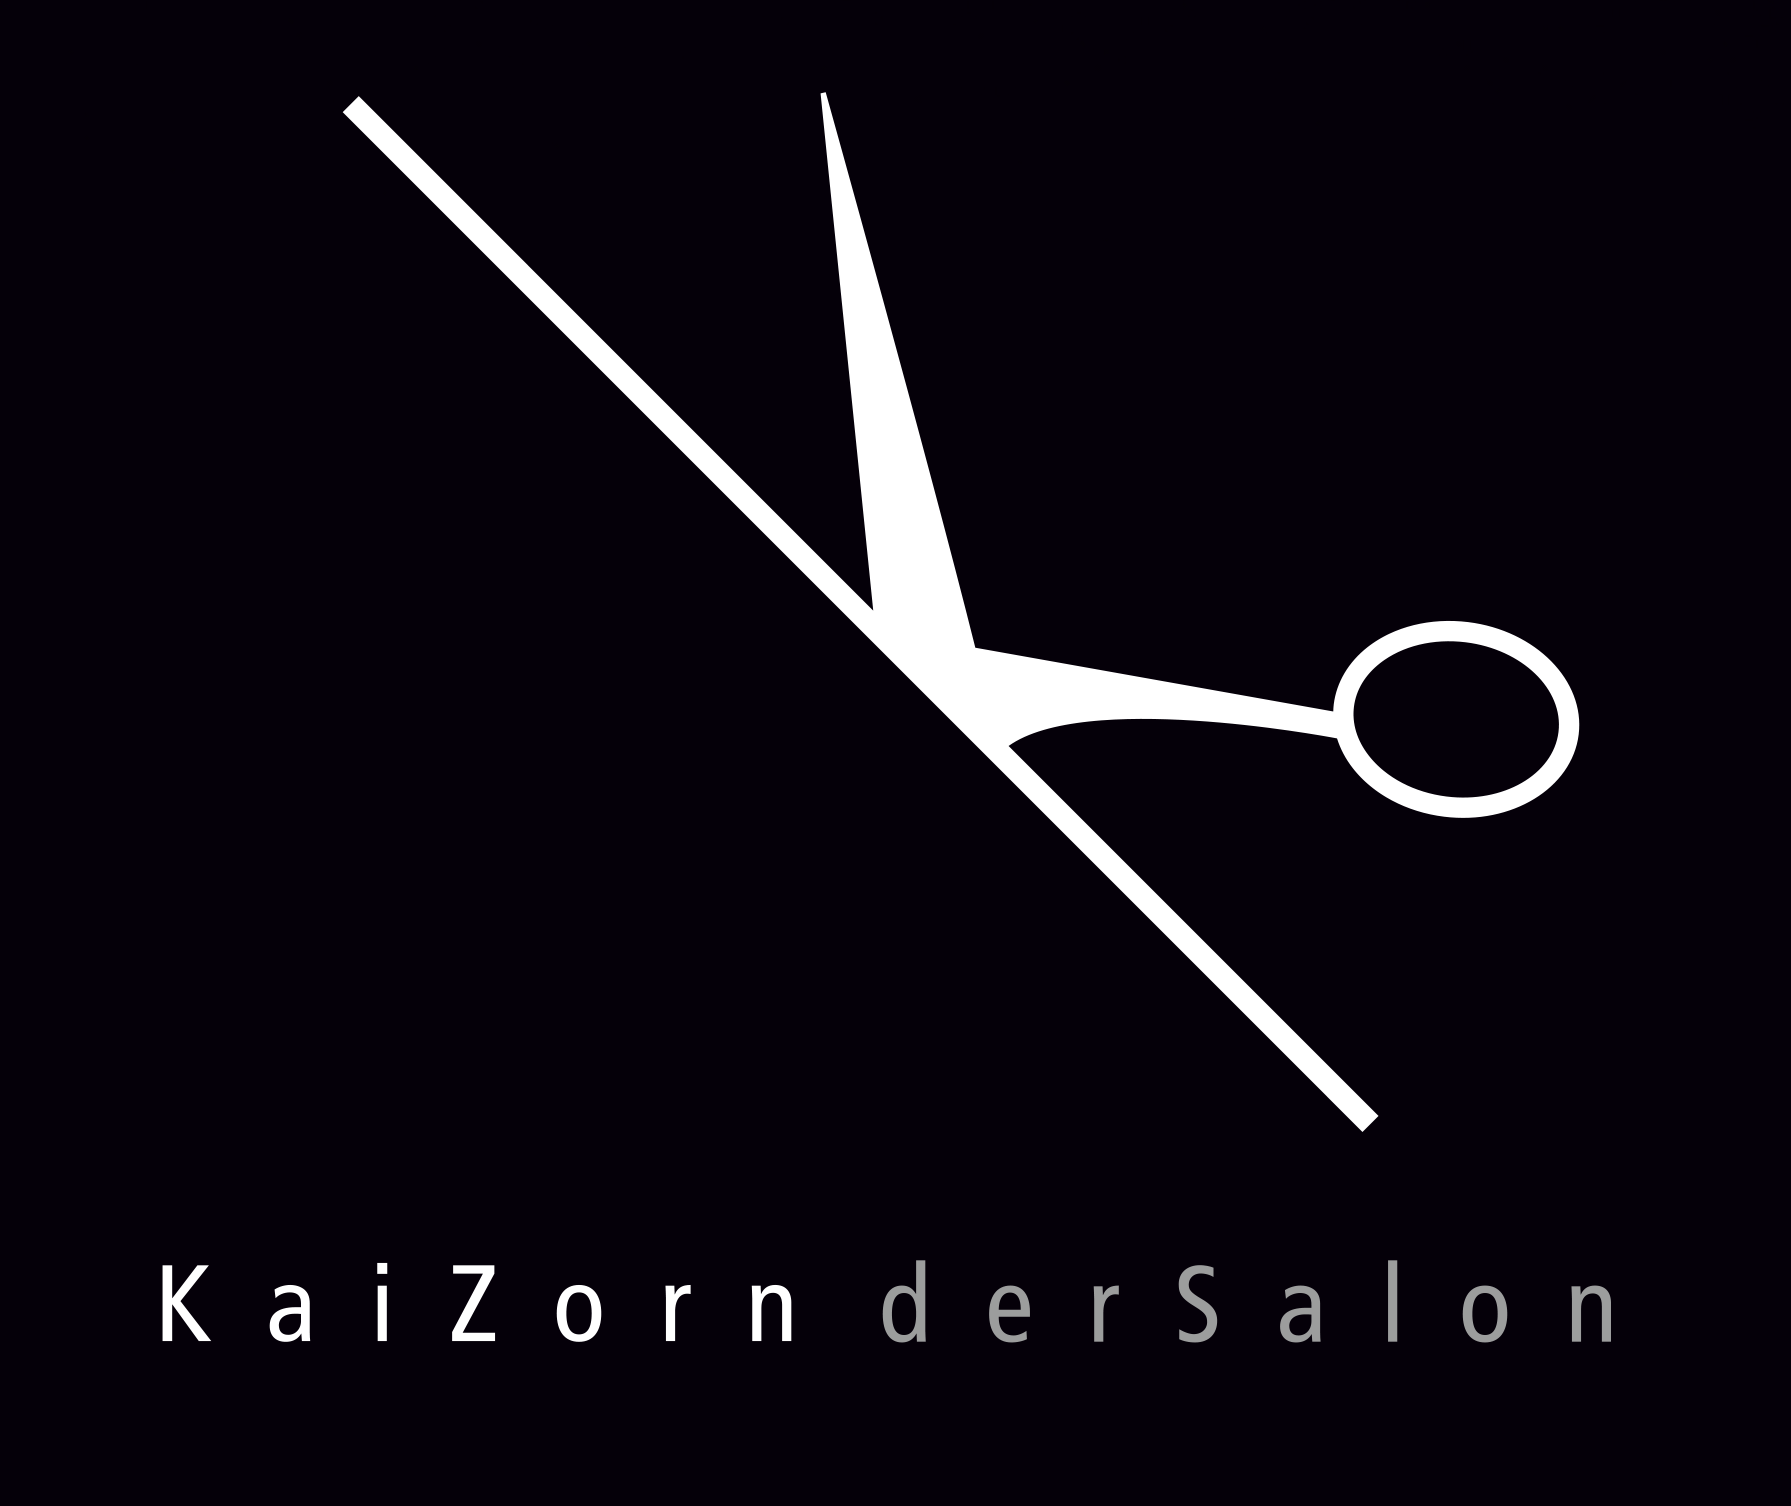 KaiZorn - derSalon